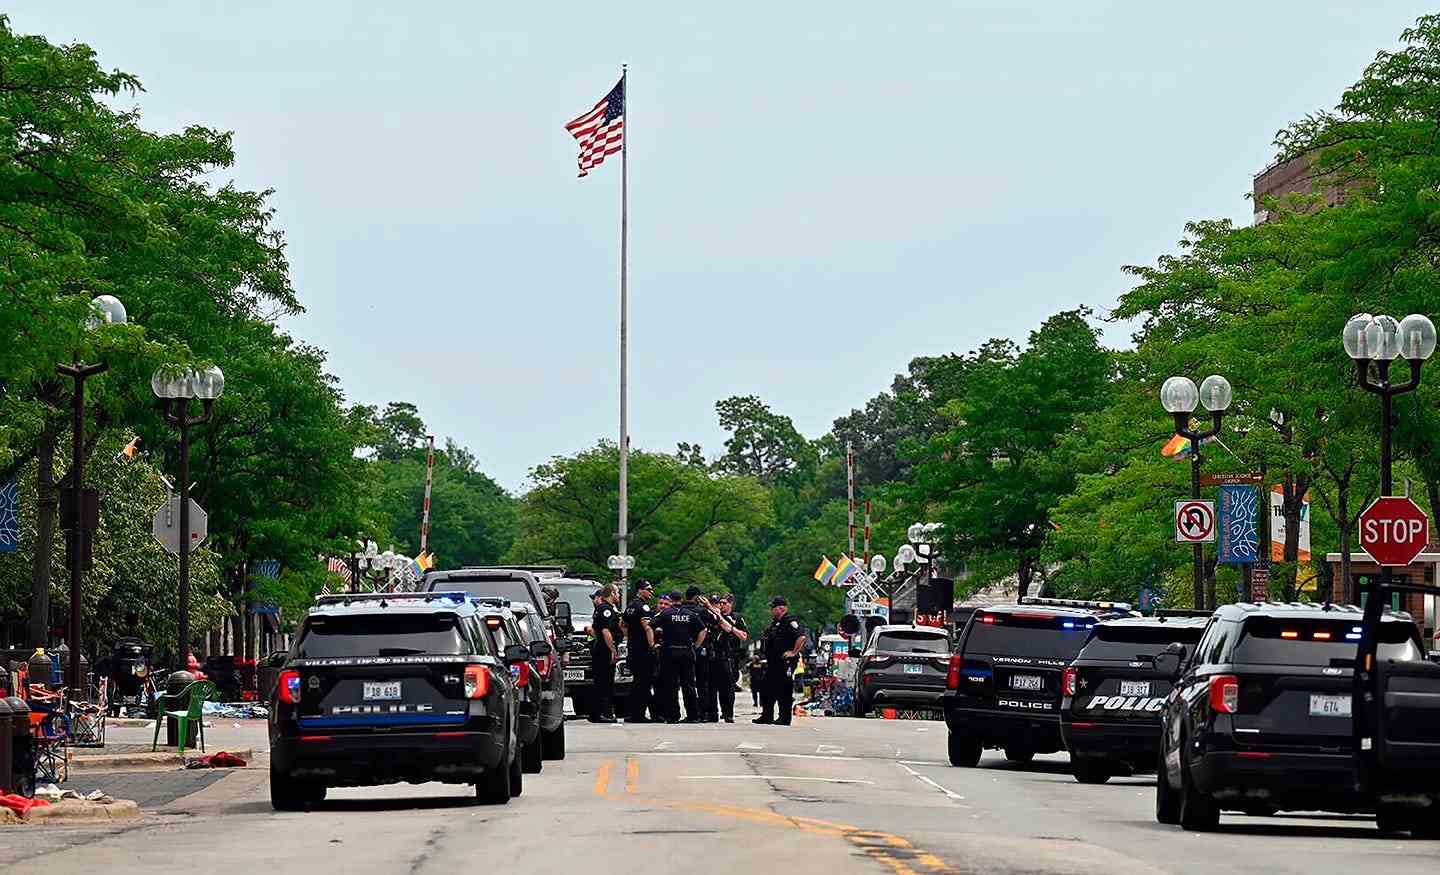 La police de plusieurs communautés a fouillé le centre-ville de Highland Park, dans l'Illinois, après la fusillade de masse lors d'un défilé le 4 juillet.